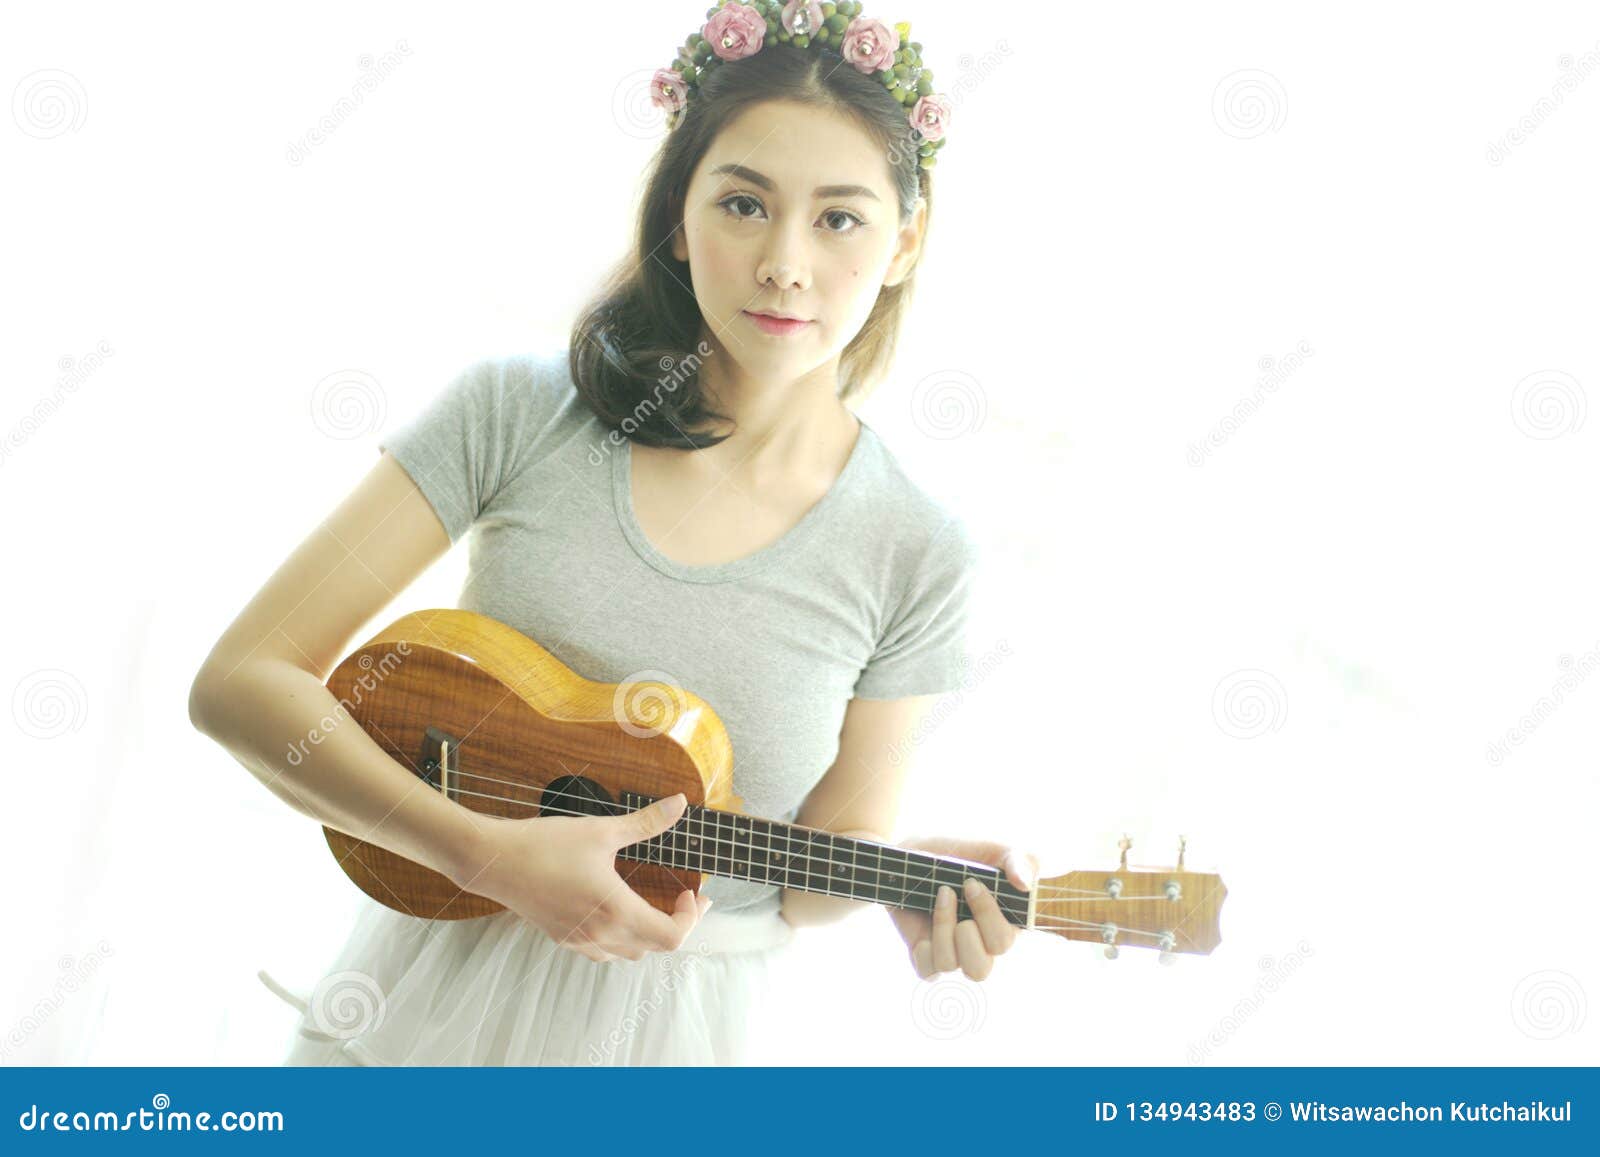 Beautiful Girl Playing Ukulele Stock Image - Image of cute,